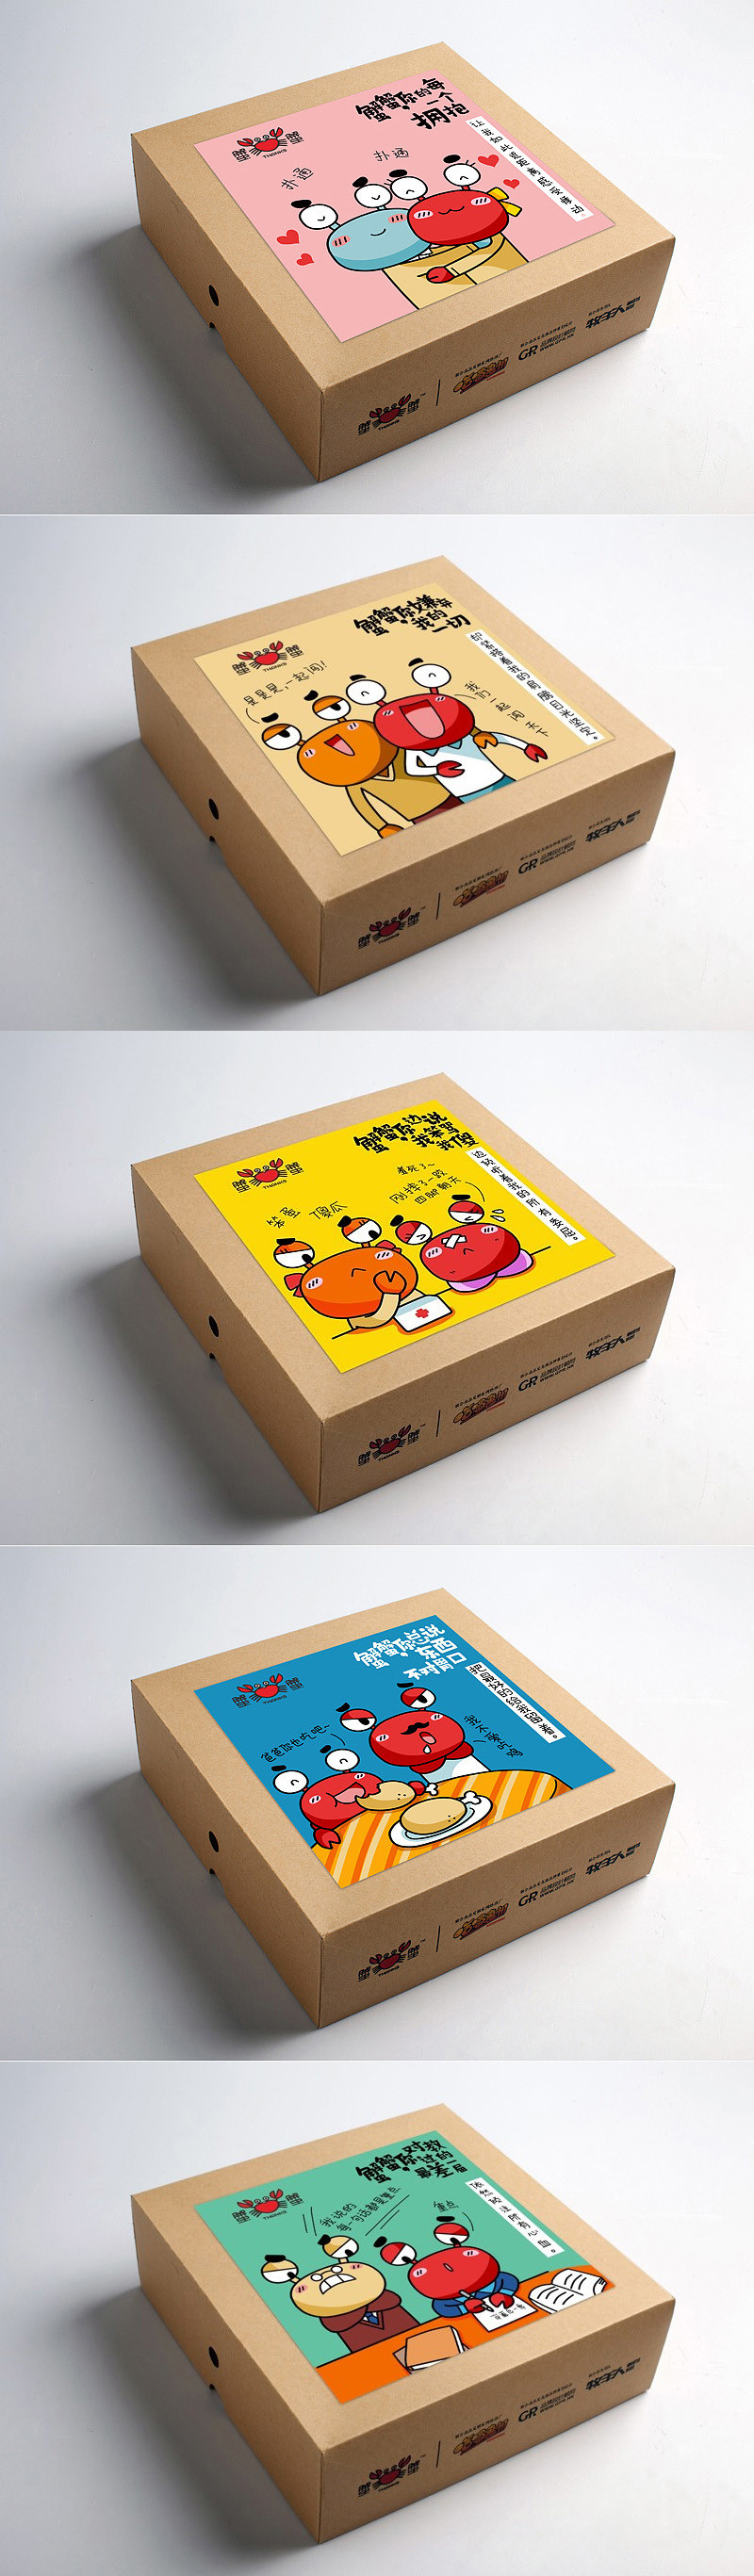 创意卡通牛卡纸螃蟹礼盒设计